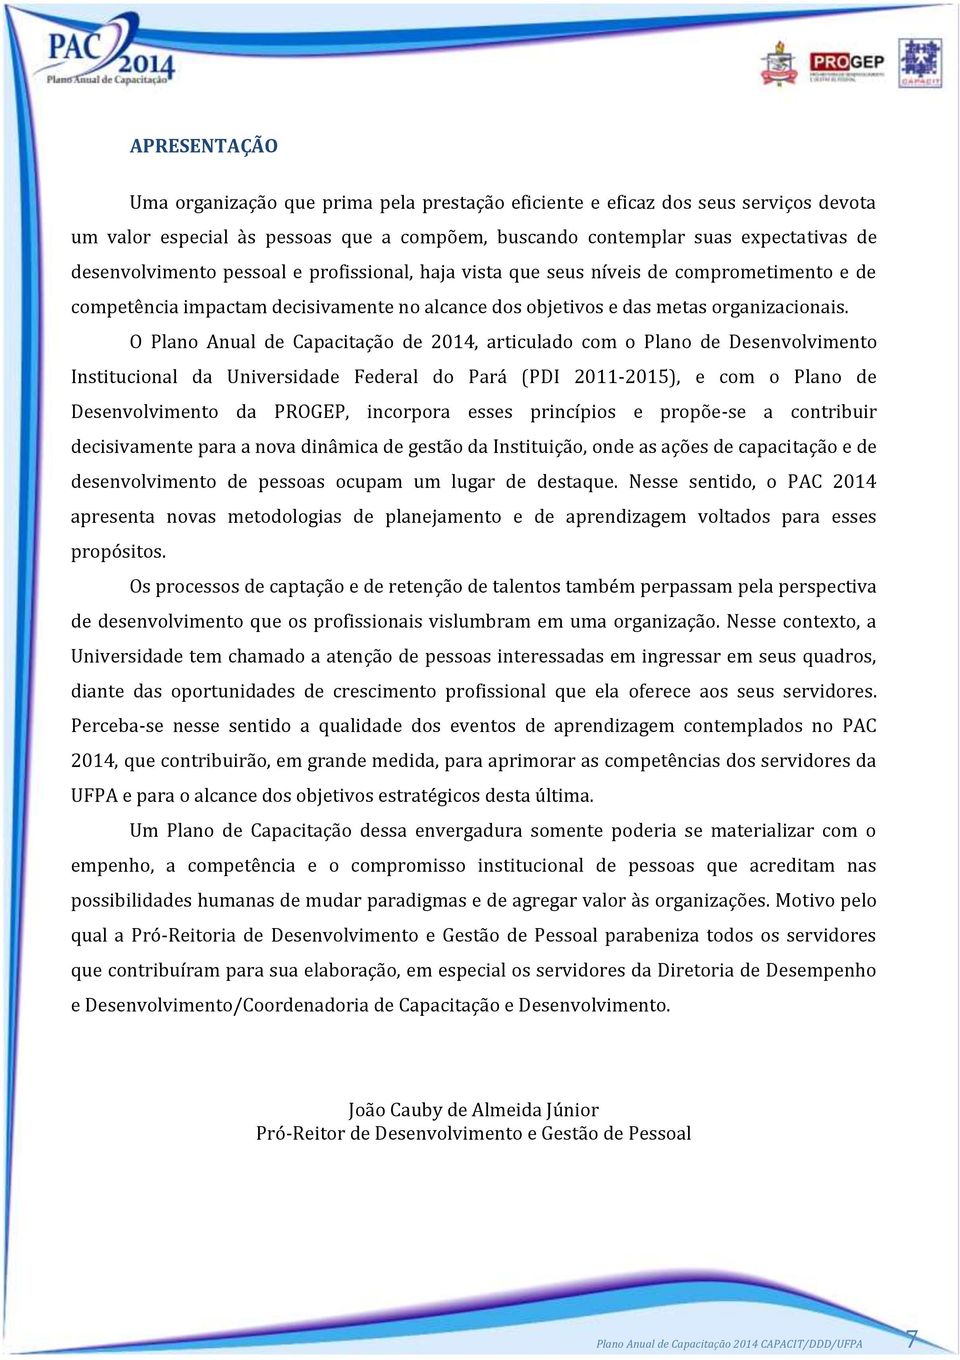 O Plano Anual de Capacitação de 2014, articulado com o Plano de Desenvolvimento Institucional da Universidade Federal do Pará (PDI 2011-2015), e com o Plano de Desenvolvimento da PROGEP, incorpora